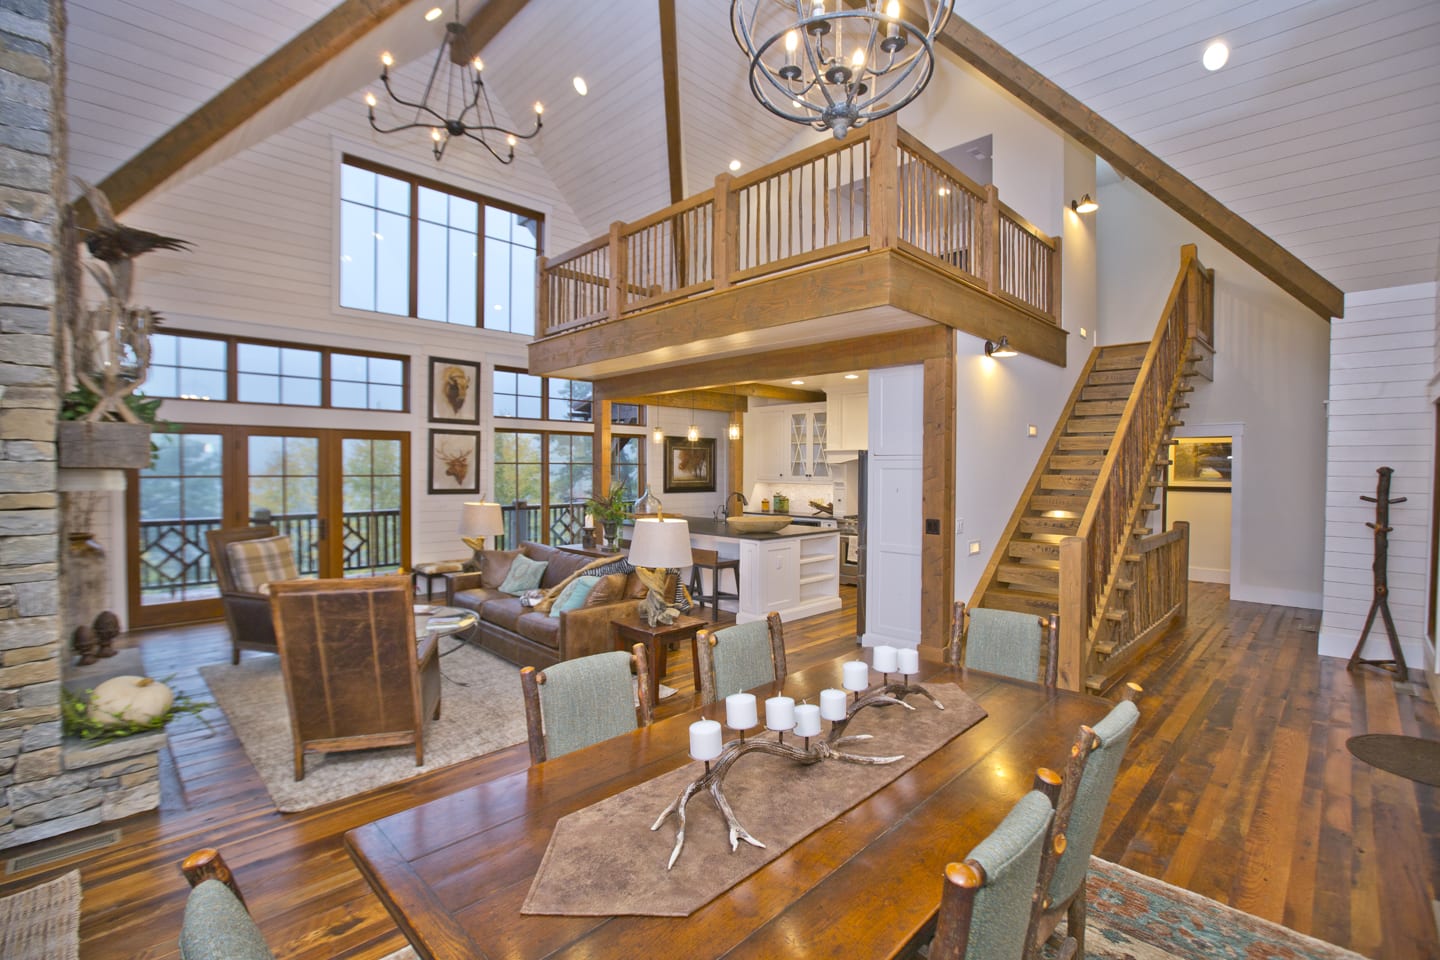 10 Interior Design Ideas for Your Mountain Home